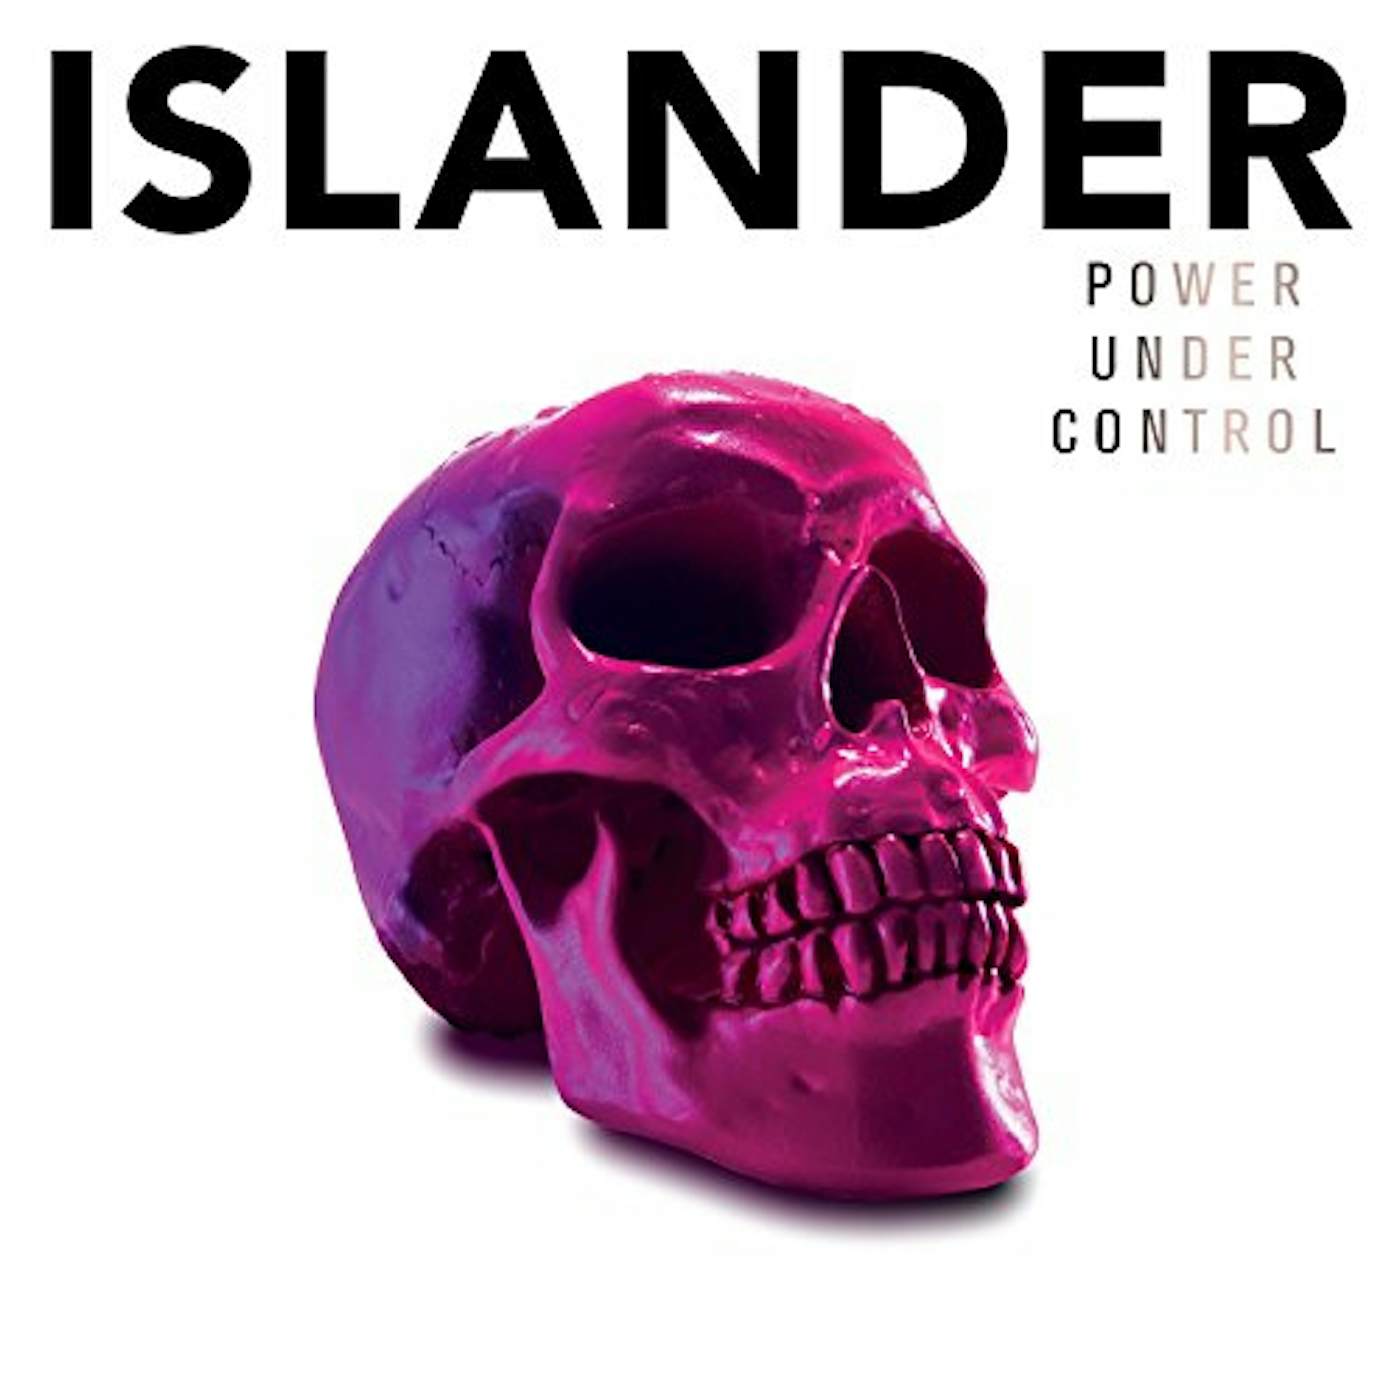 Islander Power Under Control Vinyl Record